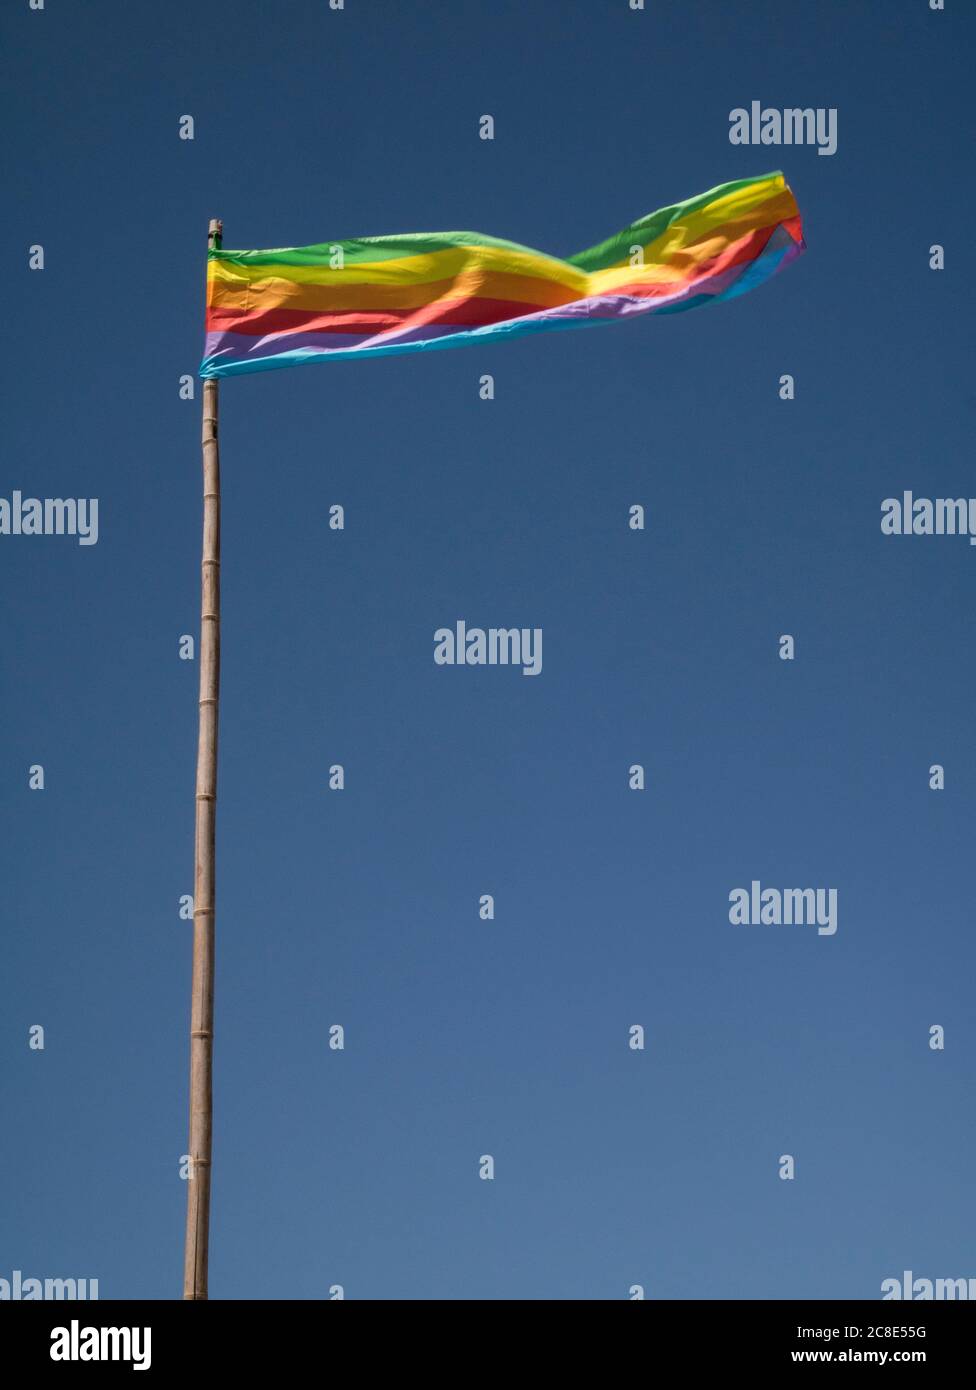 Le drapeau arc-en-ciel flotte contre le ciel Banque D'Images